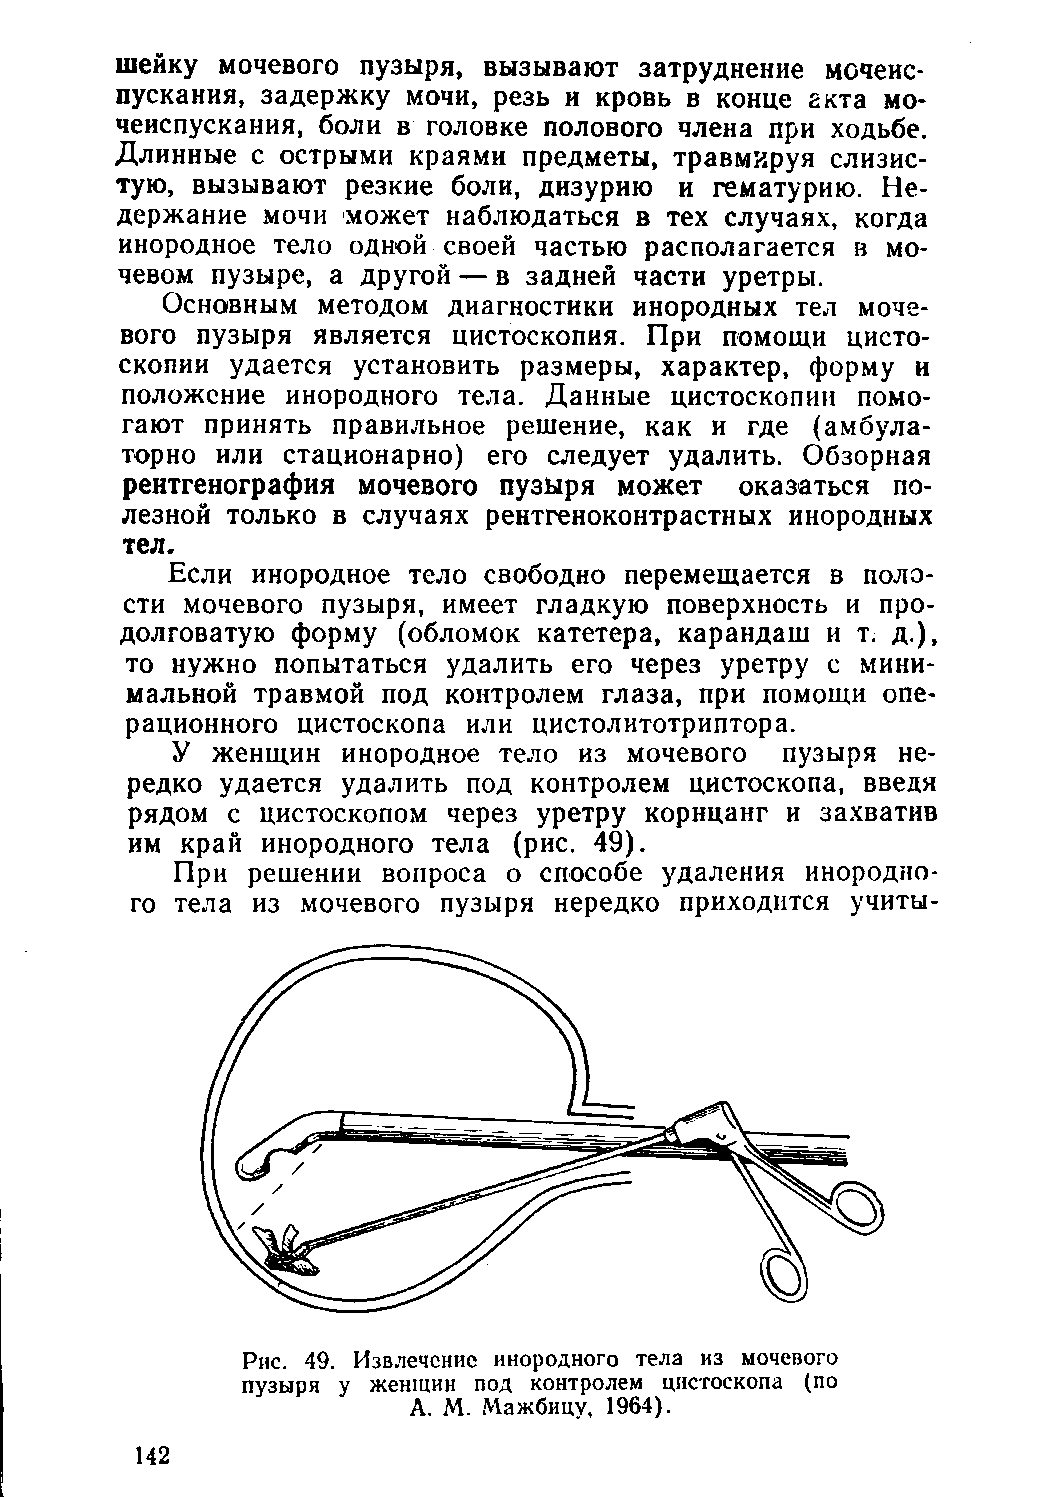 Рис. 49. Извлечение инородного тела из мочевого пузыря у женщин под контролем цистоскопа (по А. М. Мажбицу. 1964).